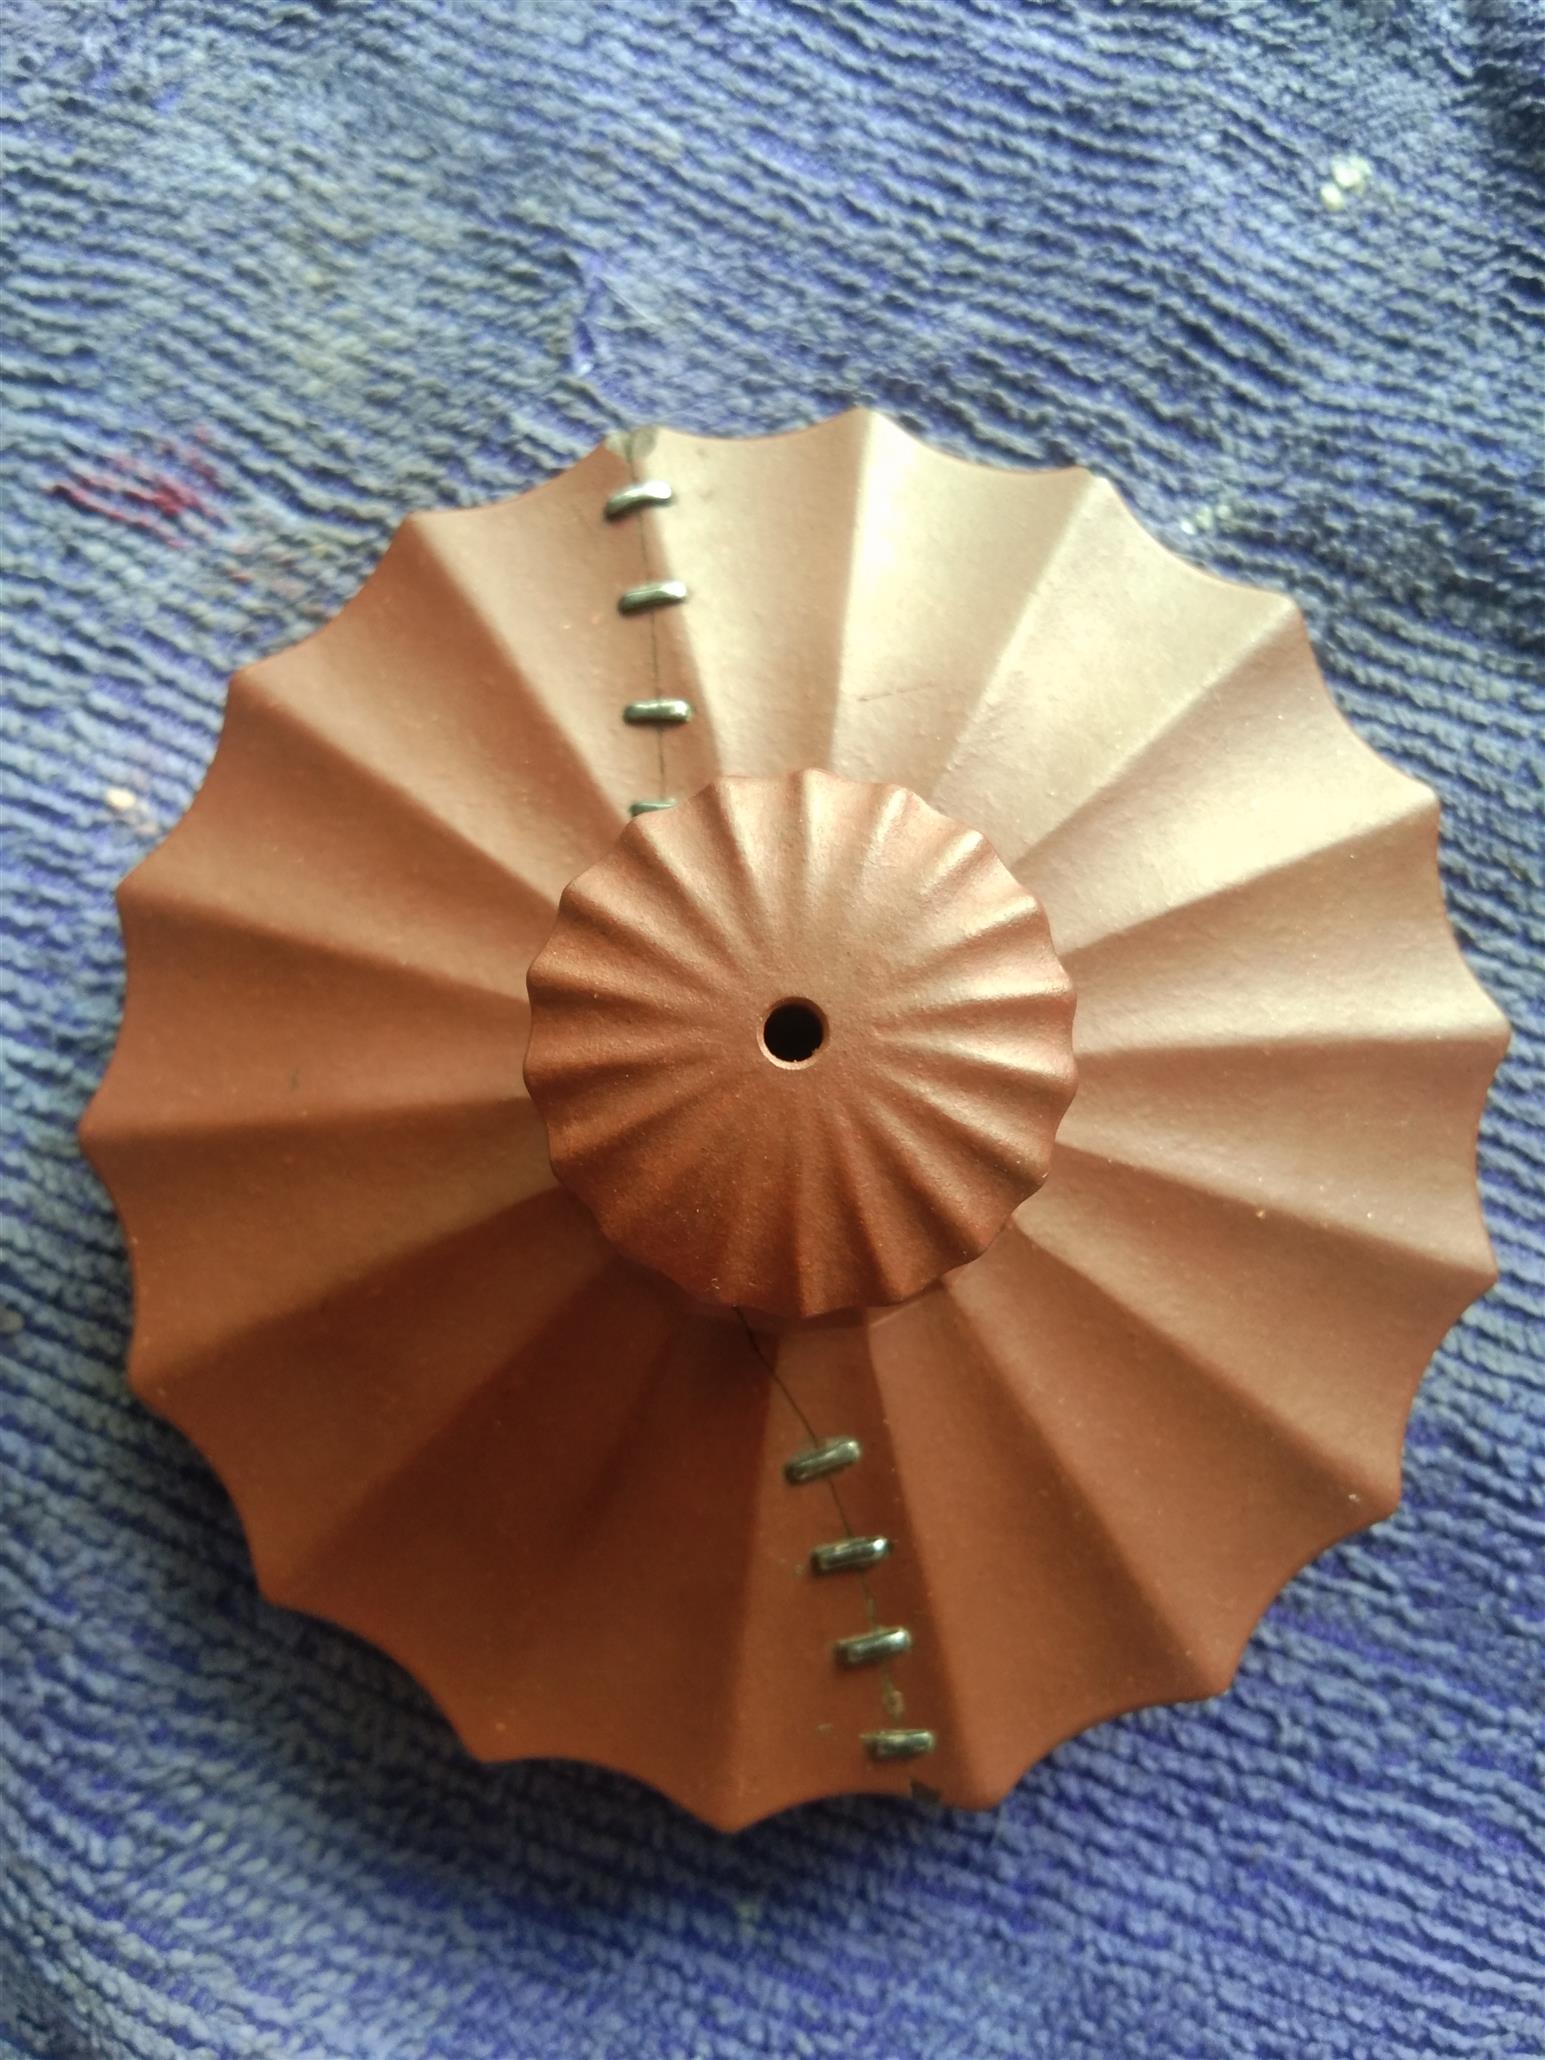 芜湖瓷器锯瓷修复培训 南京美瓷工艺品有限公司